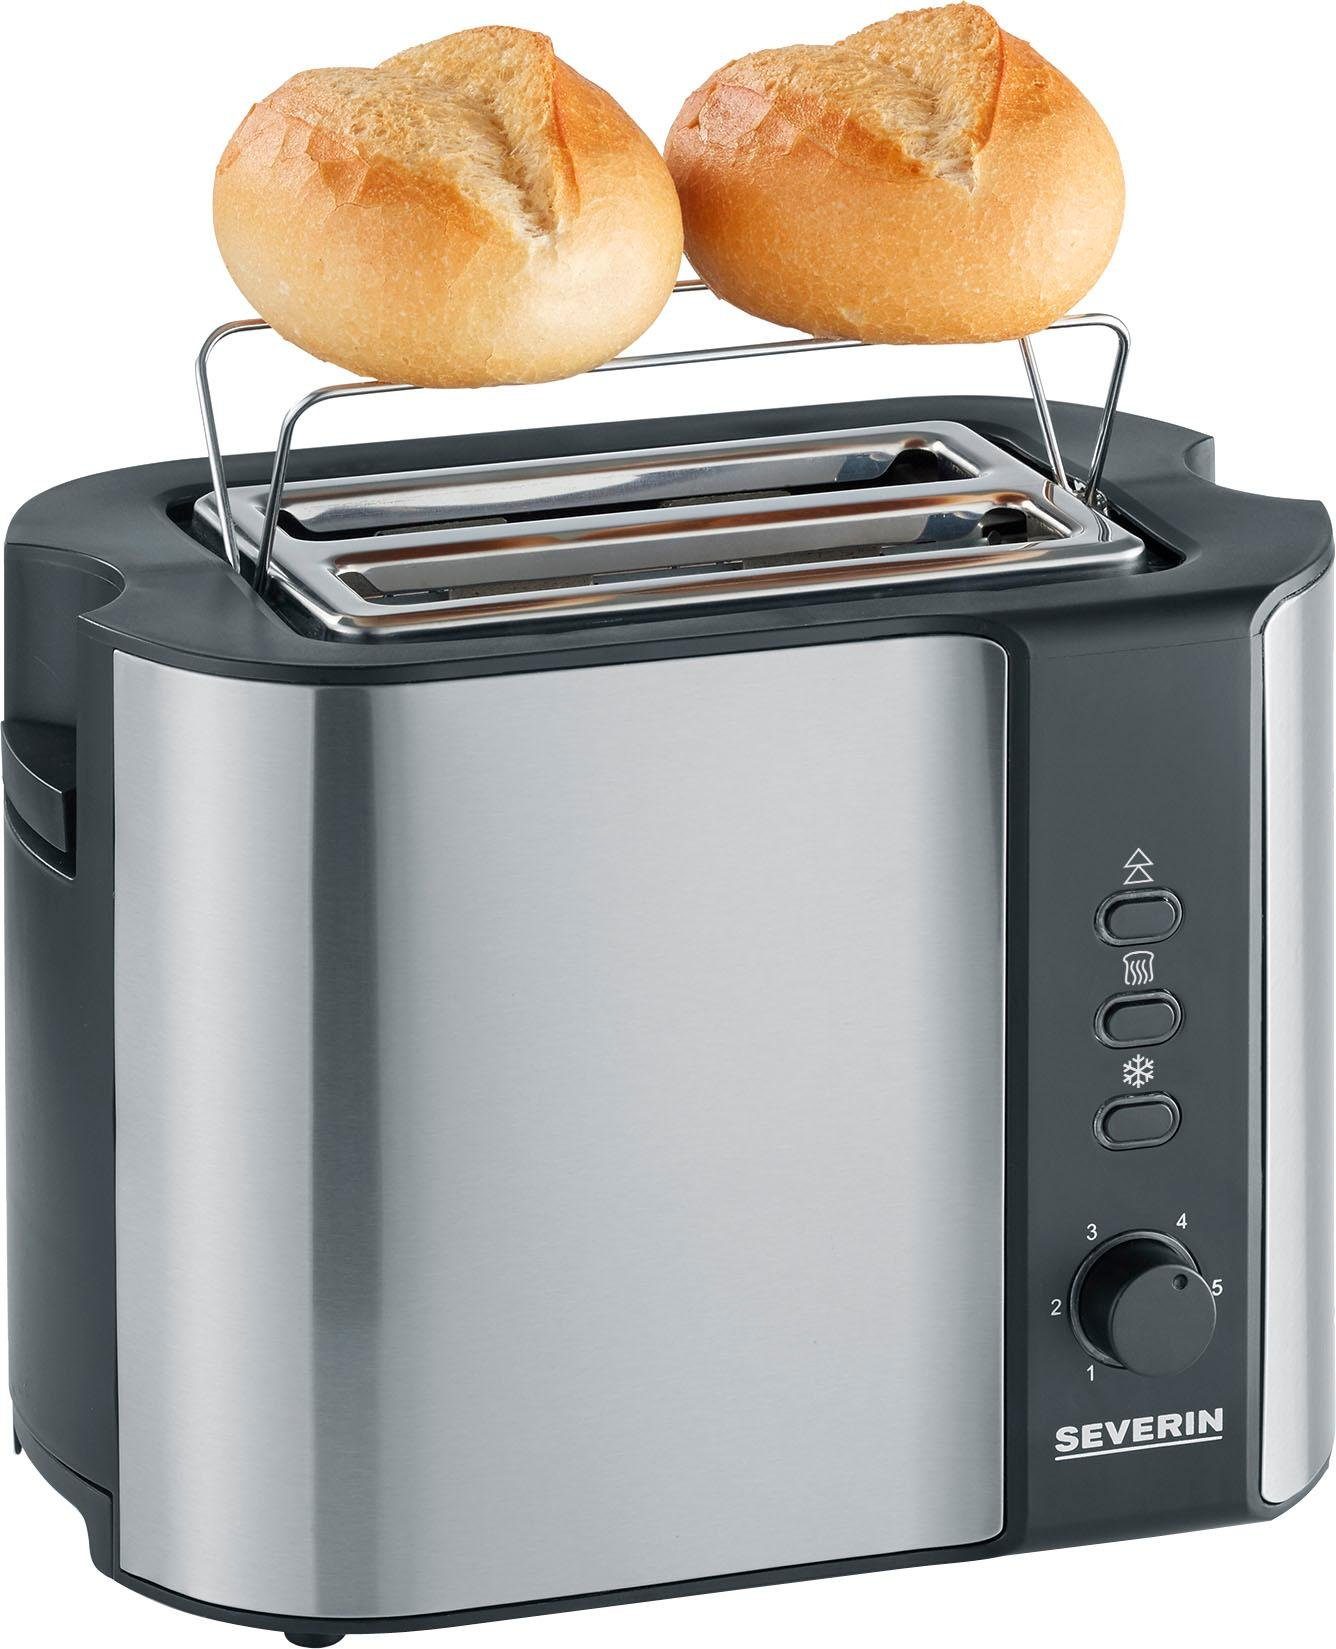 Otto - Severin Severin toaster AT 2589, voor 2 plakken brood, 800 Watt